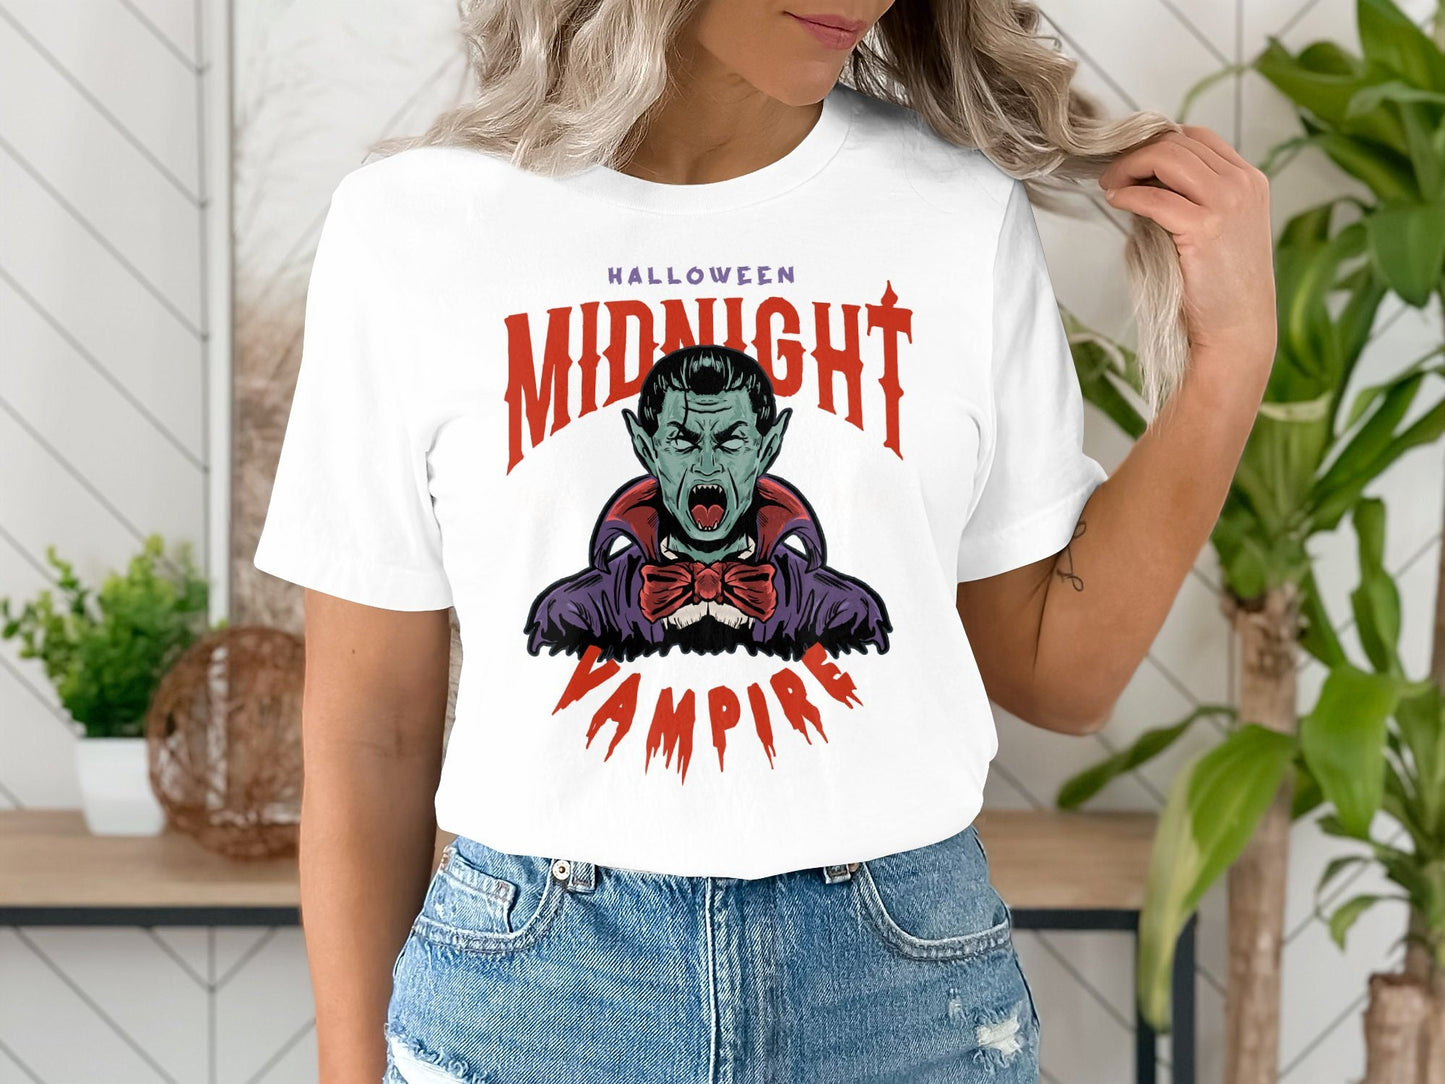 Halloween Midnight T-Shirt, Halloween Party, Halloween Costume, Halloween Group Tee, Custom Halloween T-Shirt, Halloween Gift For Friends